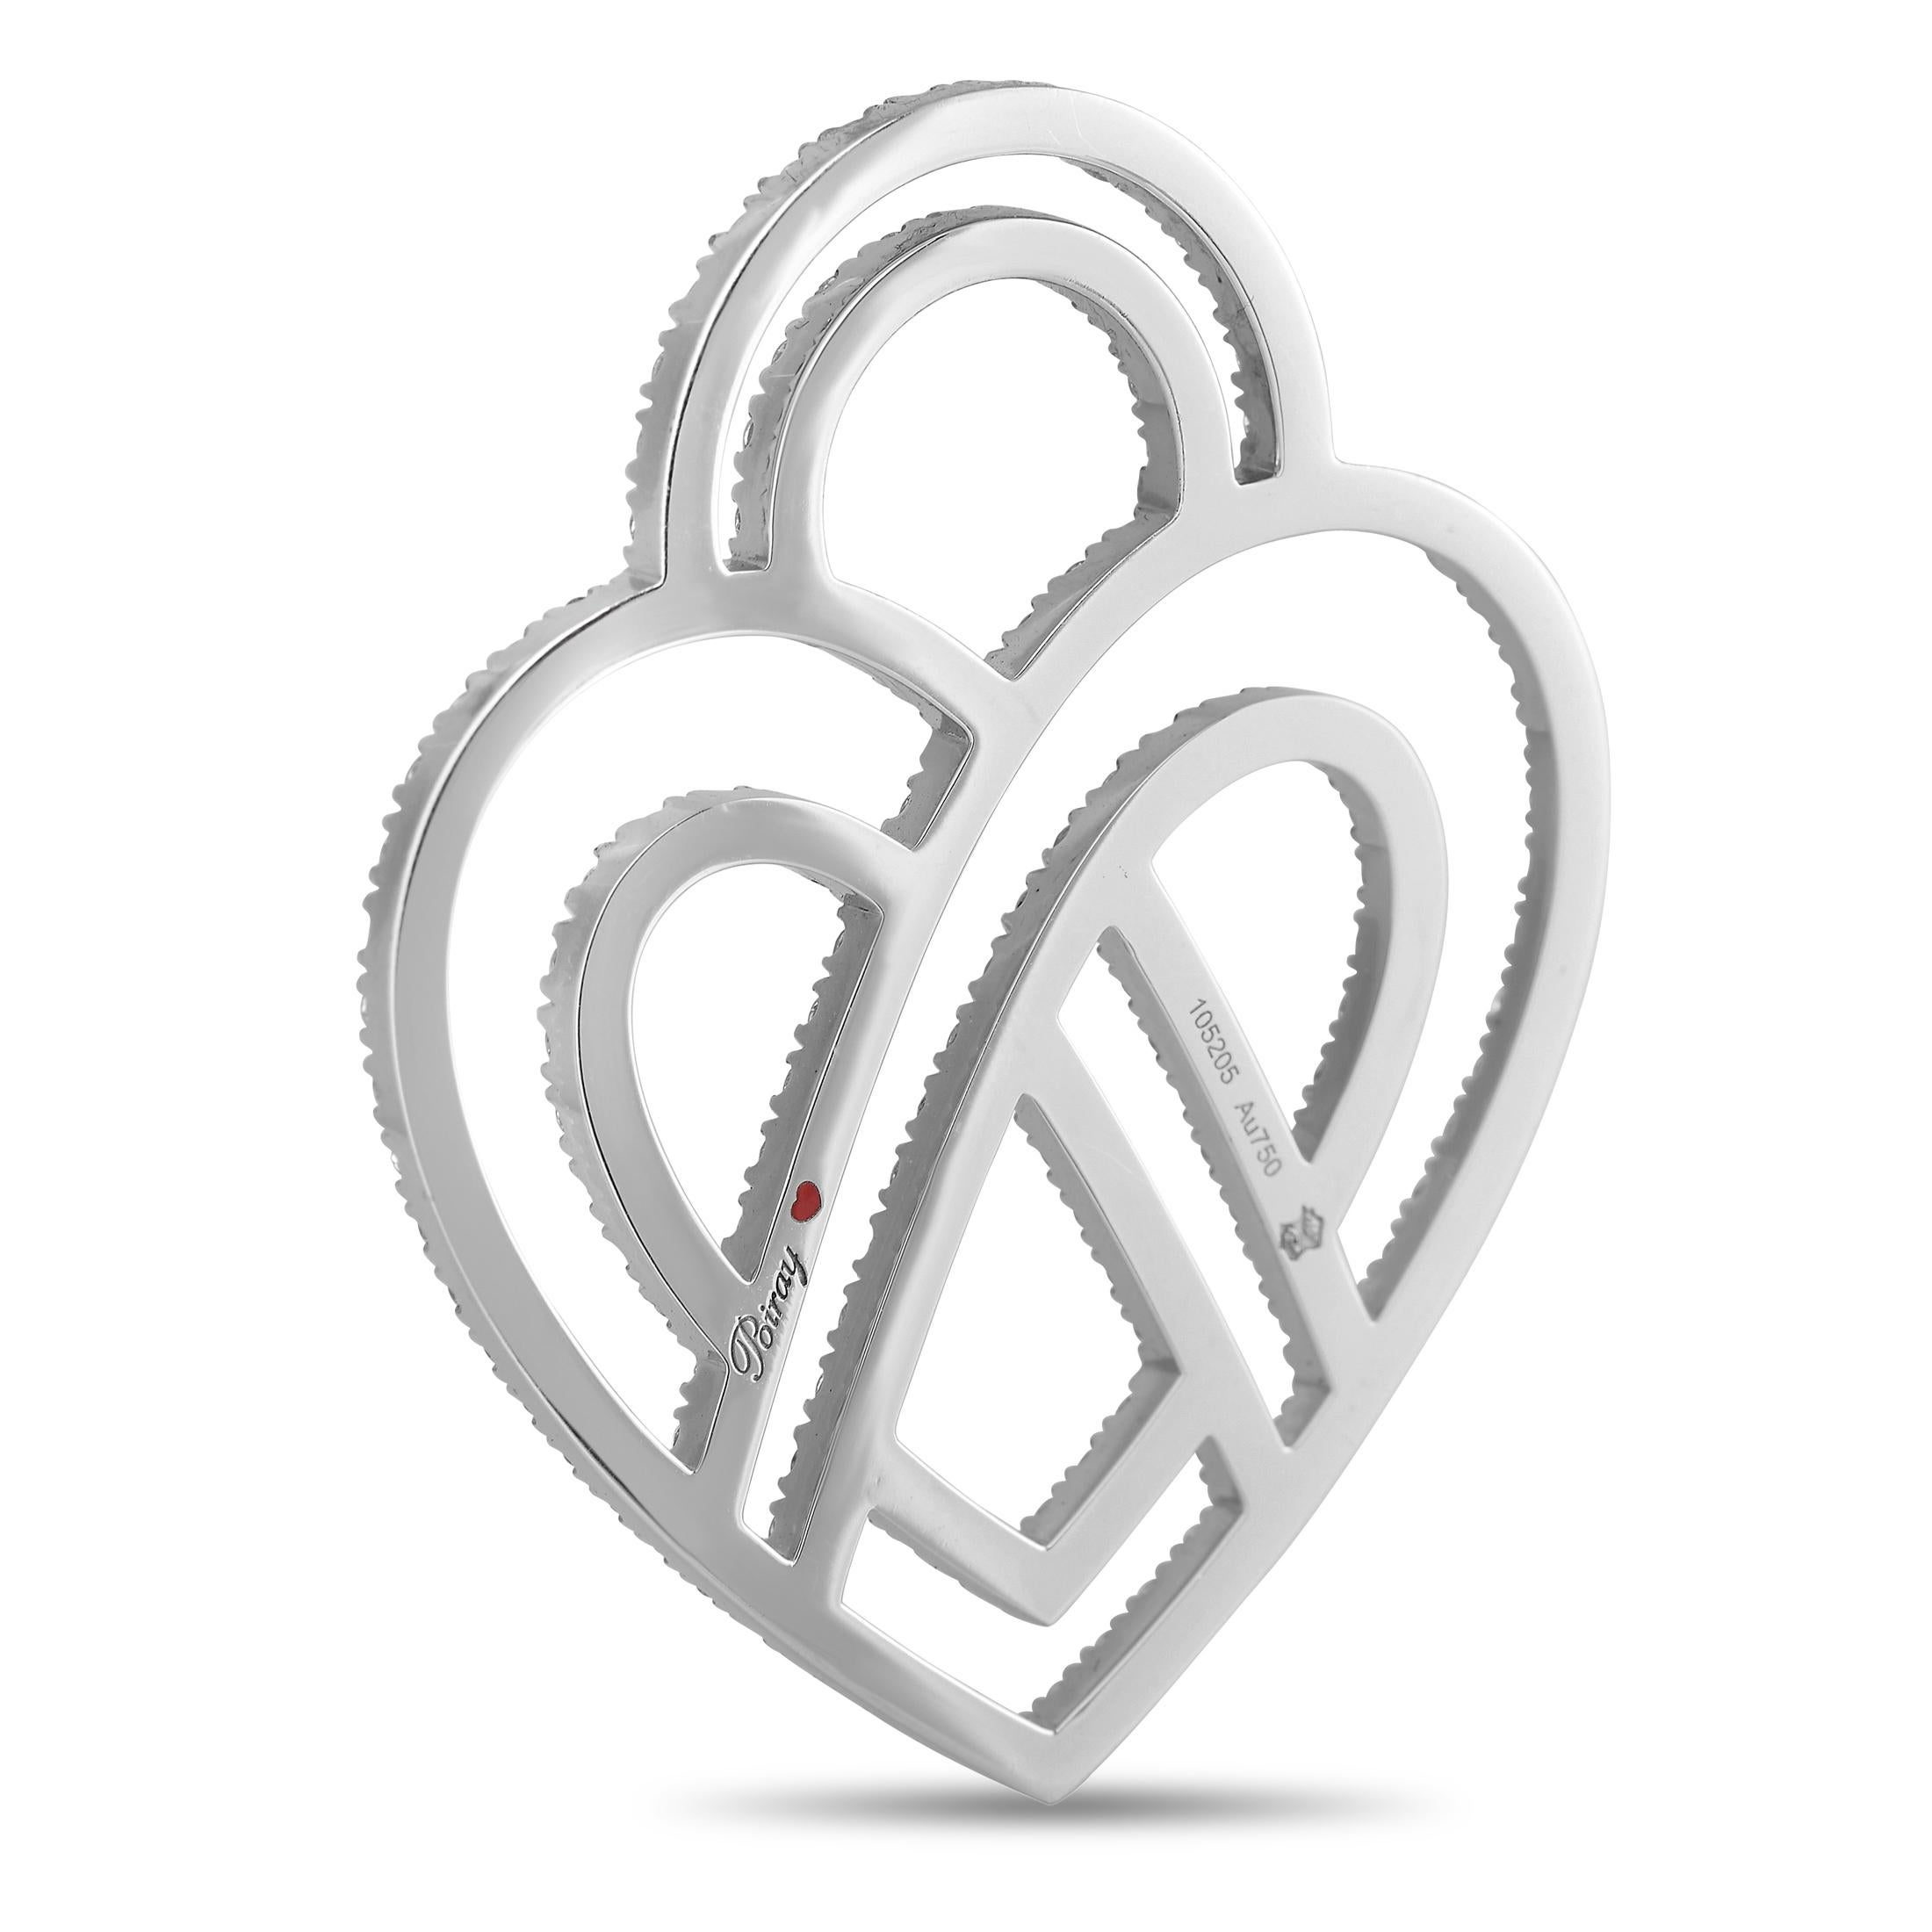 Ce grand pendentif de Poiray, qui affiche un style grandiose, vous fera craquer. Le motif du cœur est façonné en or blanc 18 carats pour un effet hypnotique. Ses contours précieux ondulent sous l'éclat luxueux de 3,75 carats de diamants. Un design